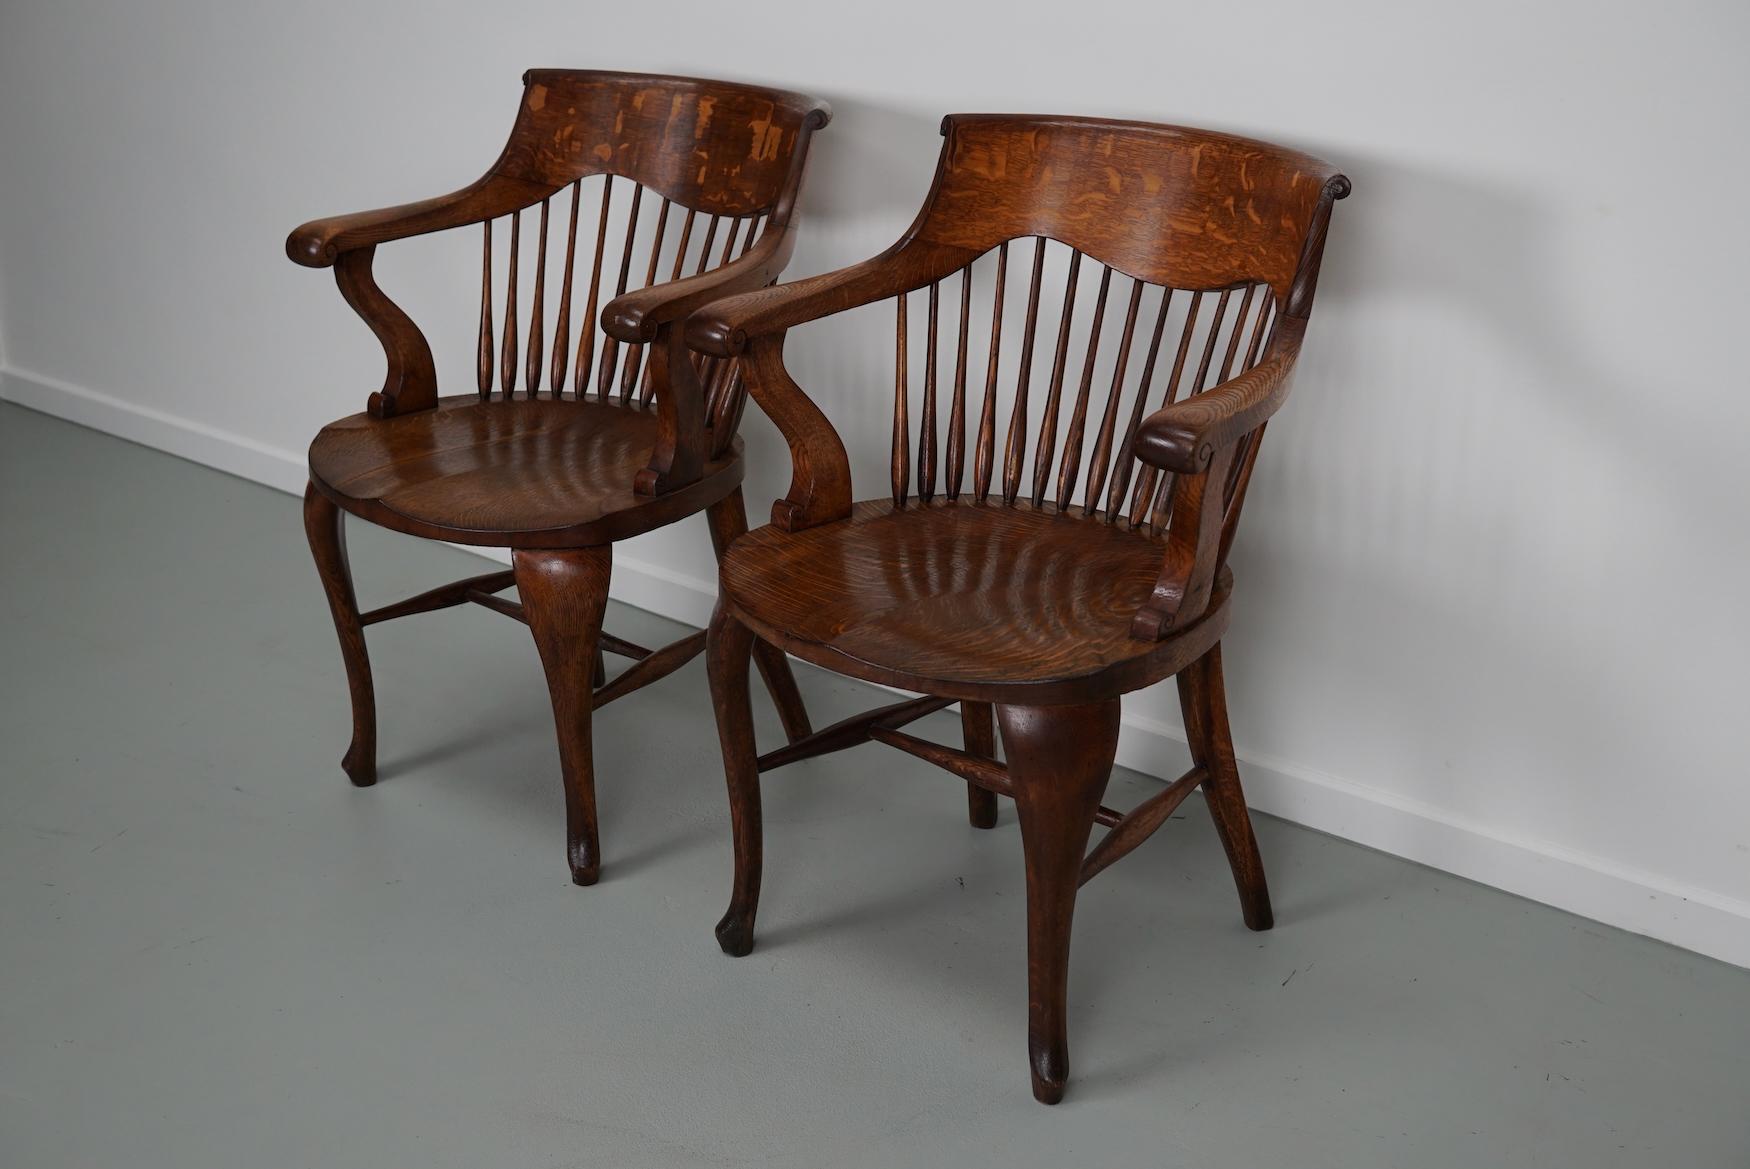 Cette paire de chaises de bureau édouardiennes a été fabriquée au début du XXe siècle en chêne de très belle qualité. Ils sont en bon état stable et ont une très belle couleur chaude.